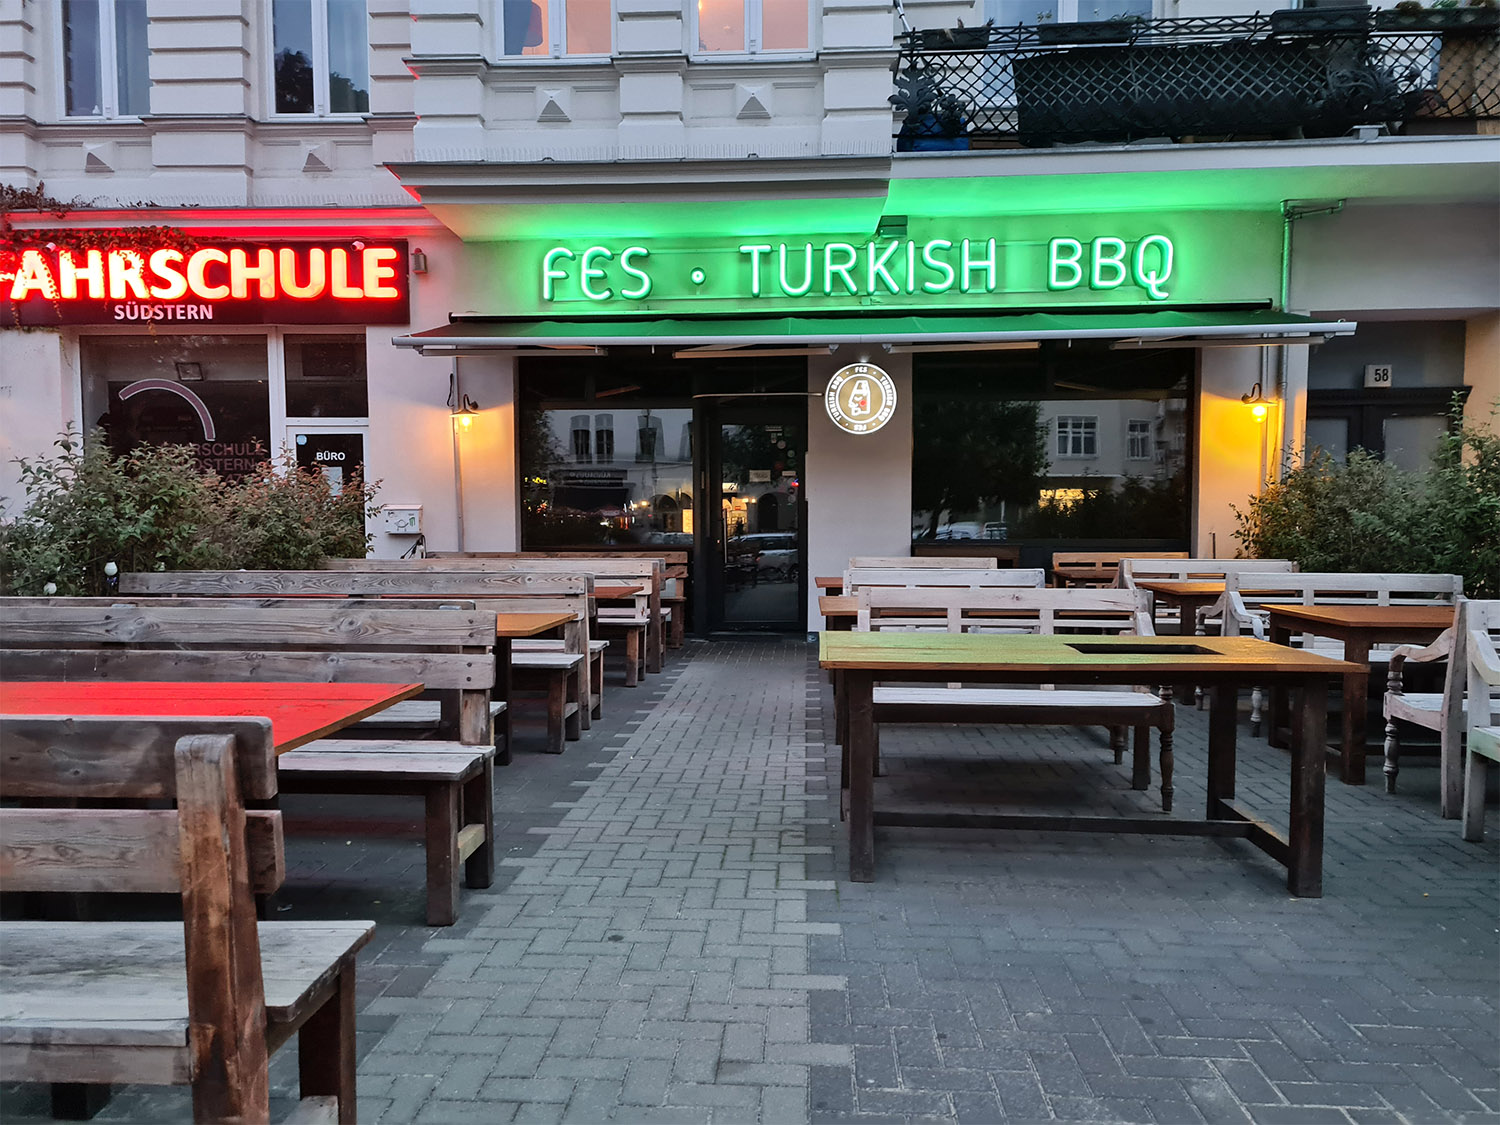 Fes türkisches Restaurant in Berlin von außen